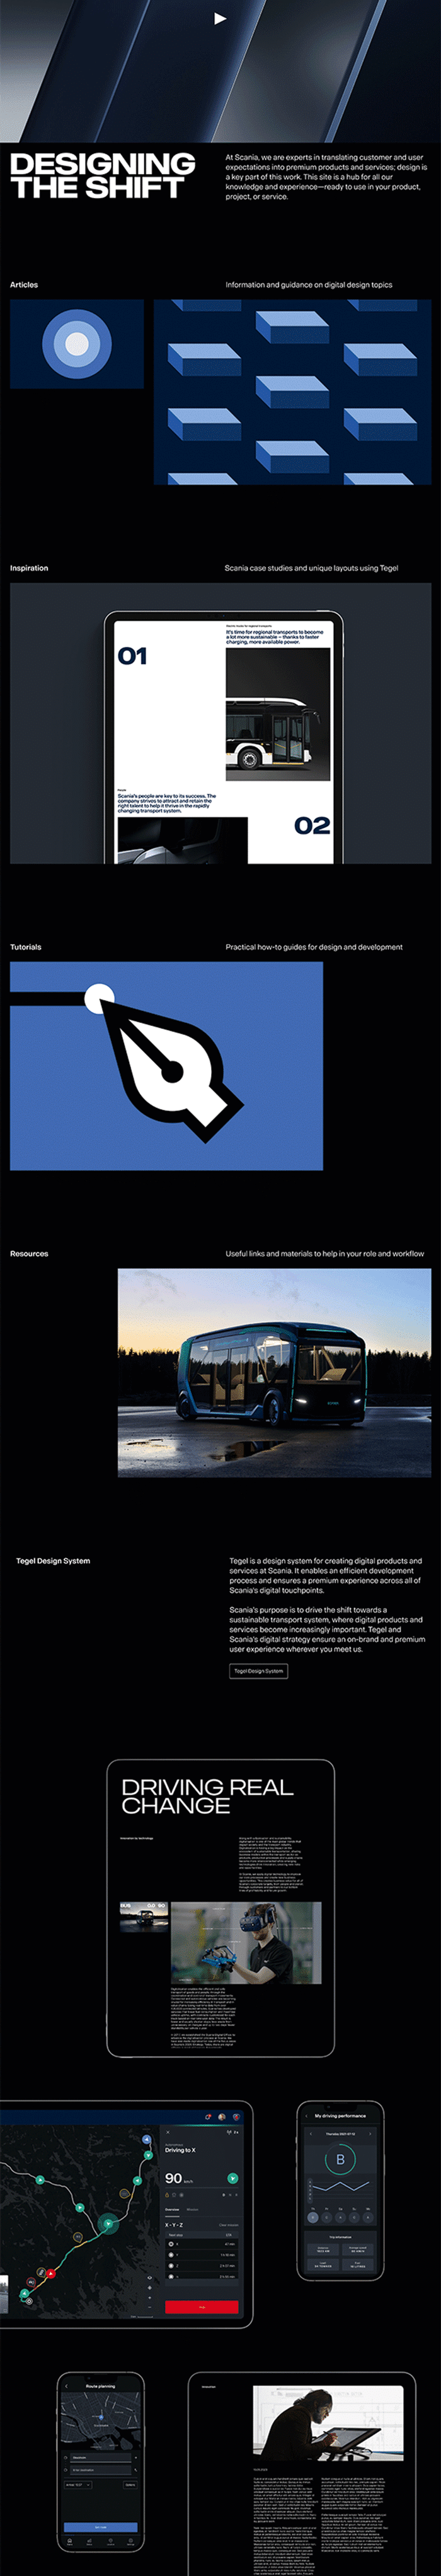 Interface Design und Brand Identity von Scania